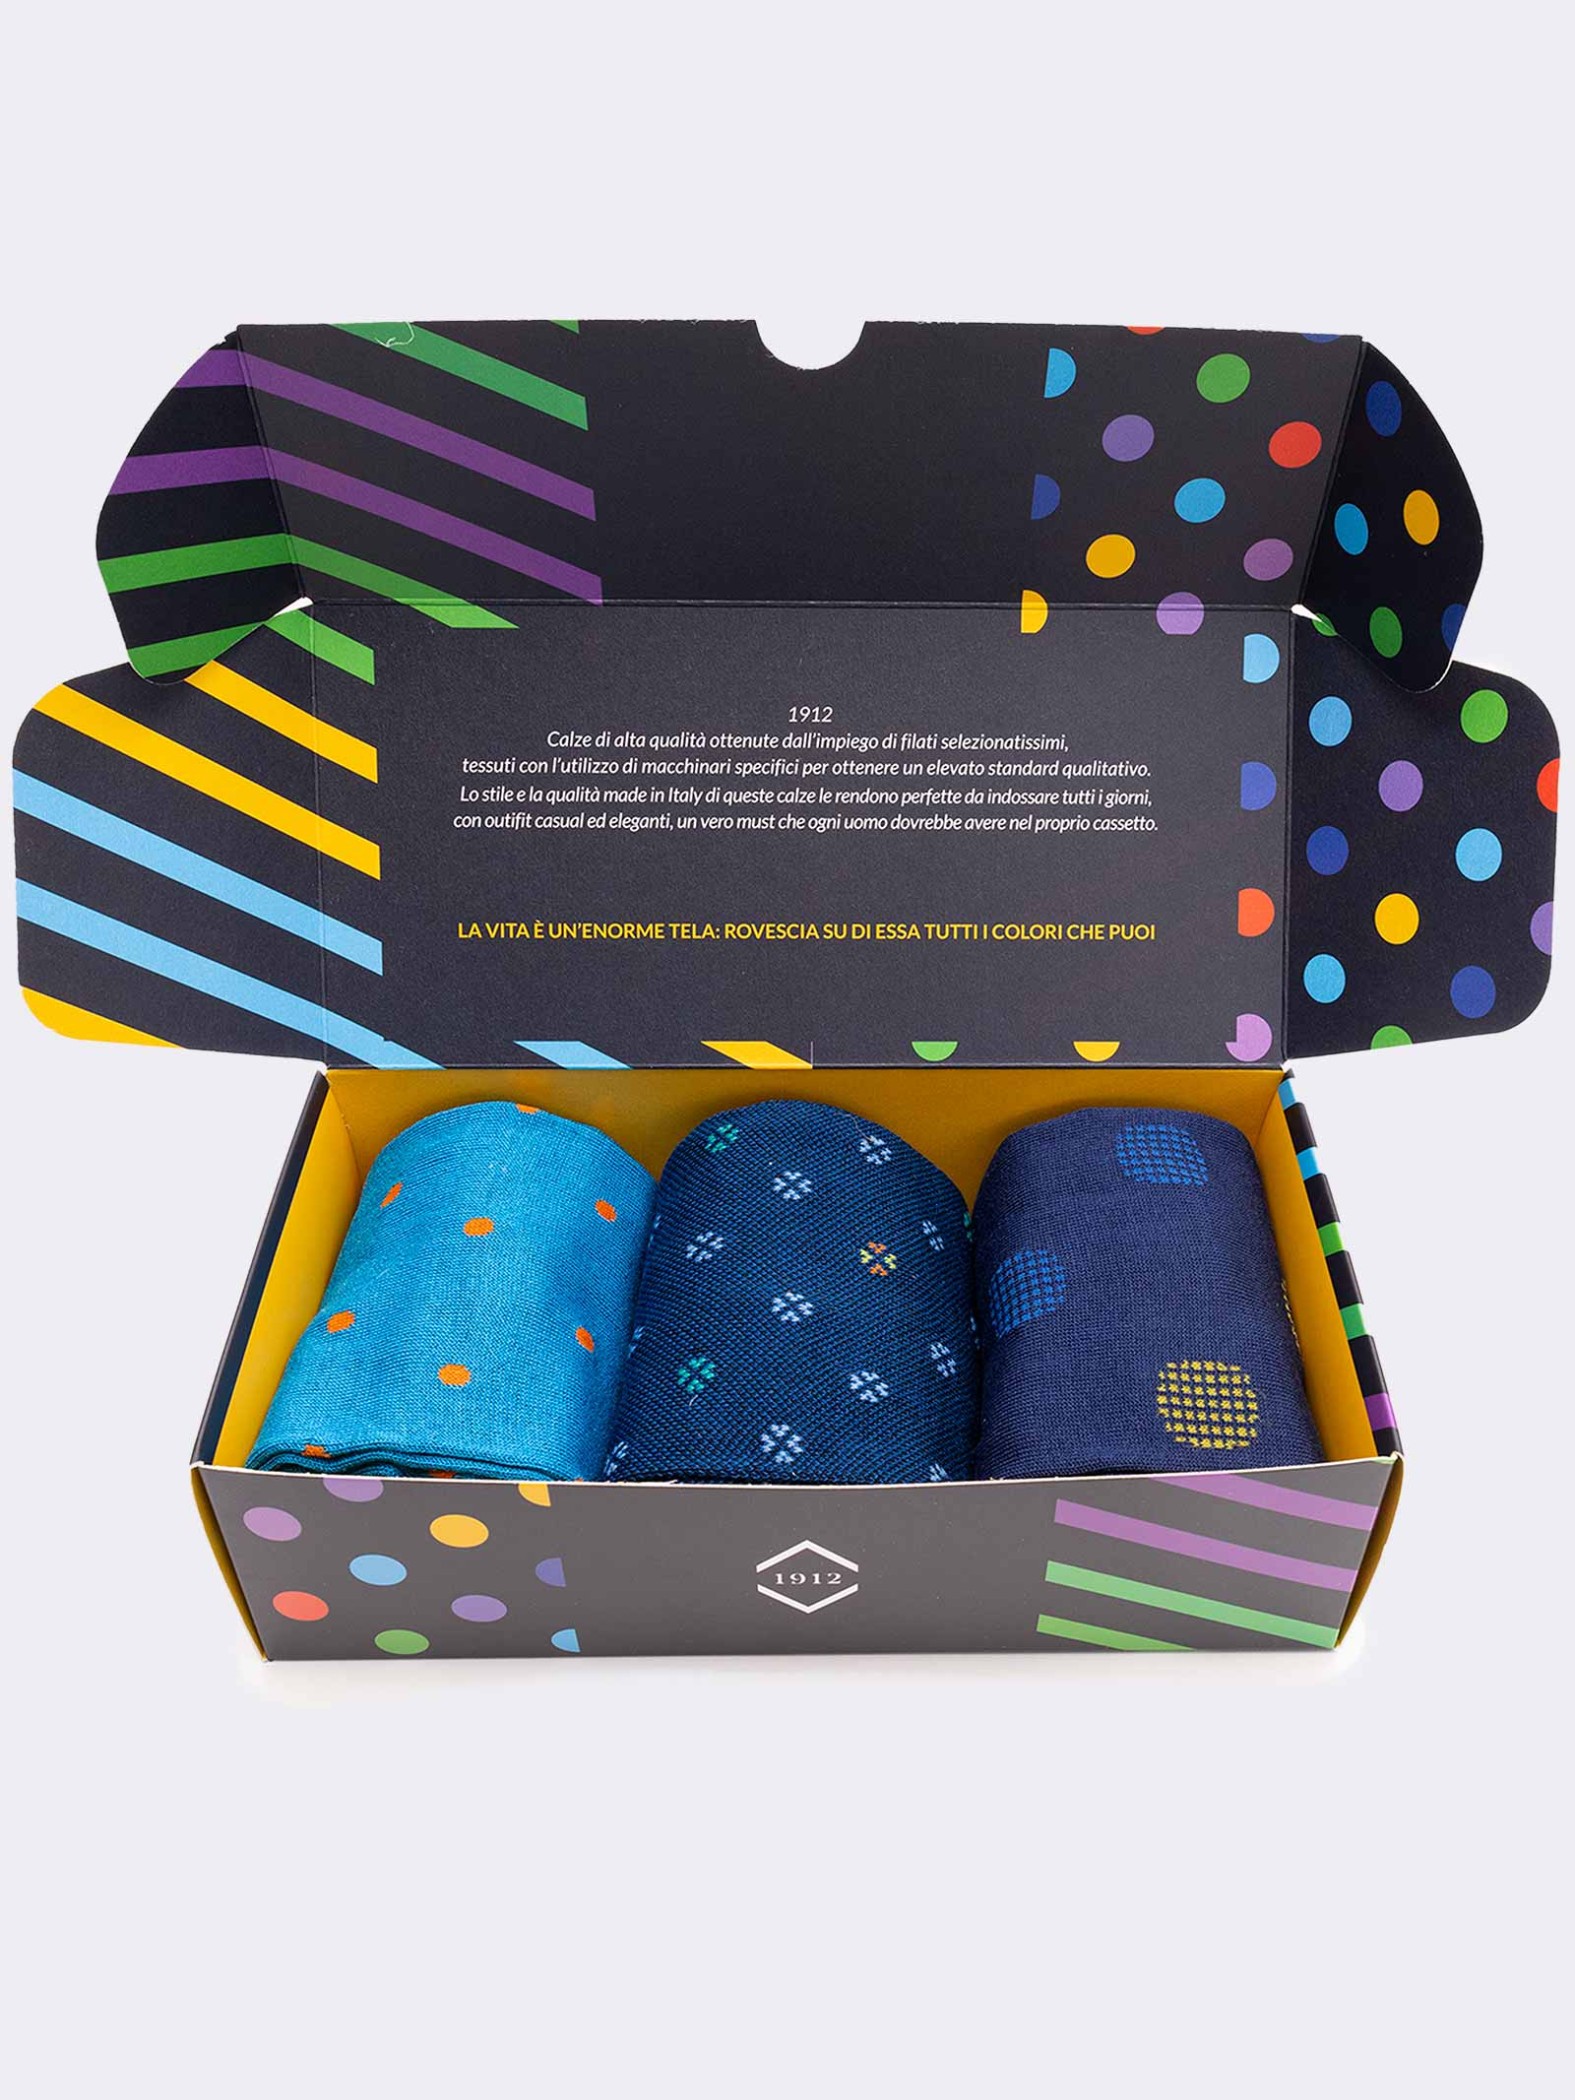 Geschenkpackung 3 Paar Socken mit Polka Dot-Muster für Männer Frische Baumwolle - Geschenkidee Made in Italy